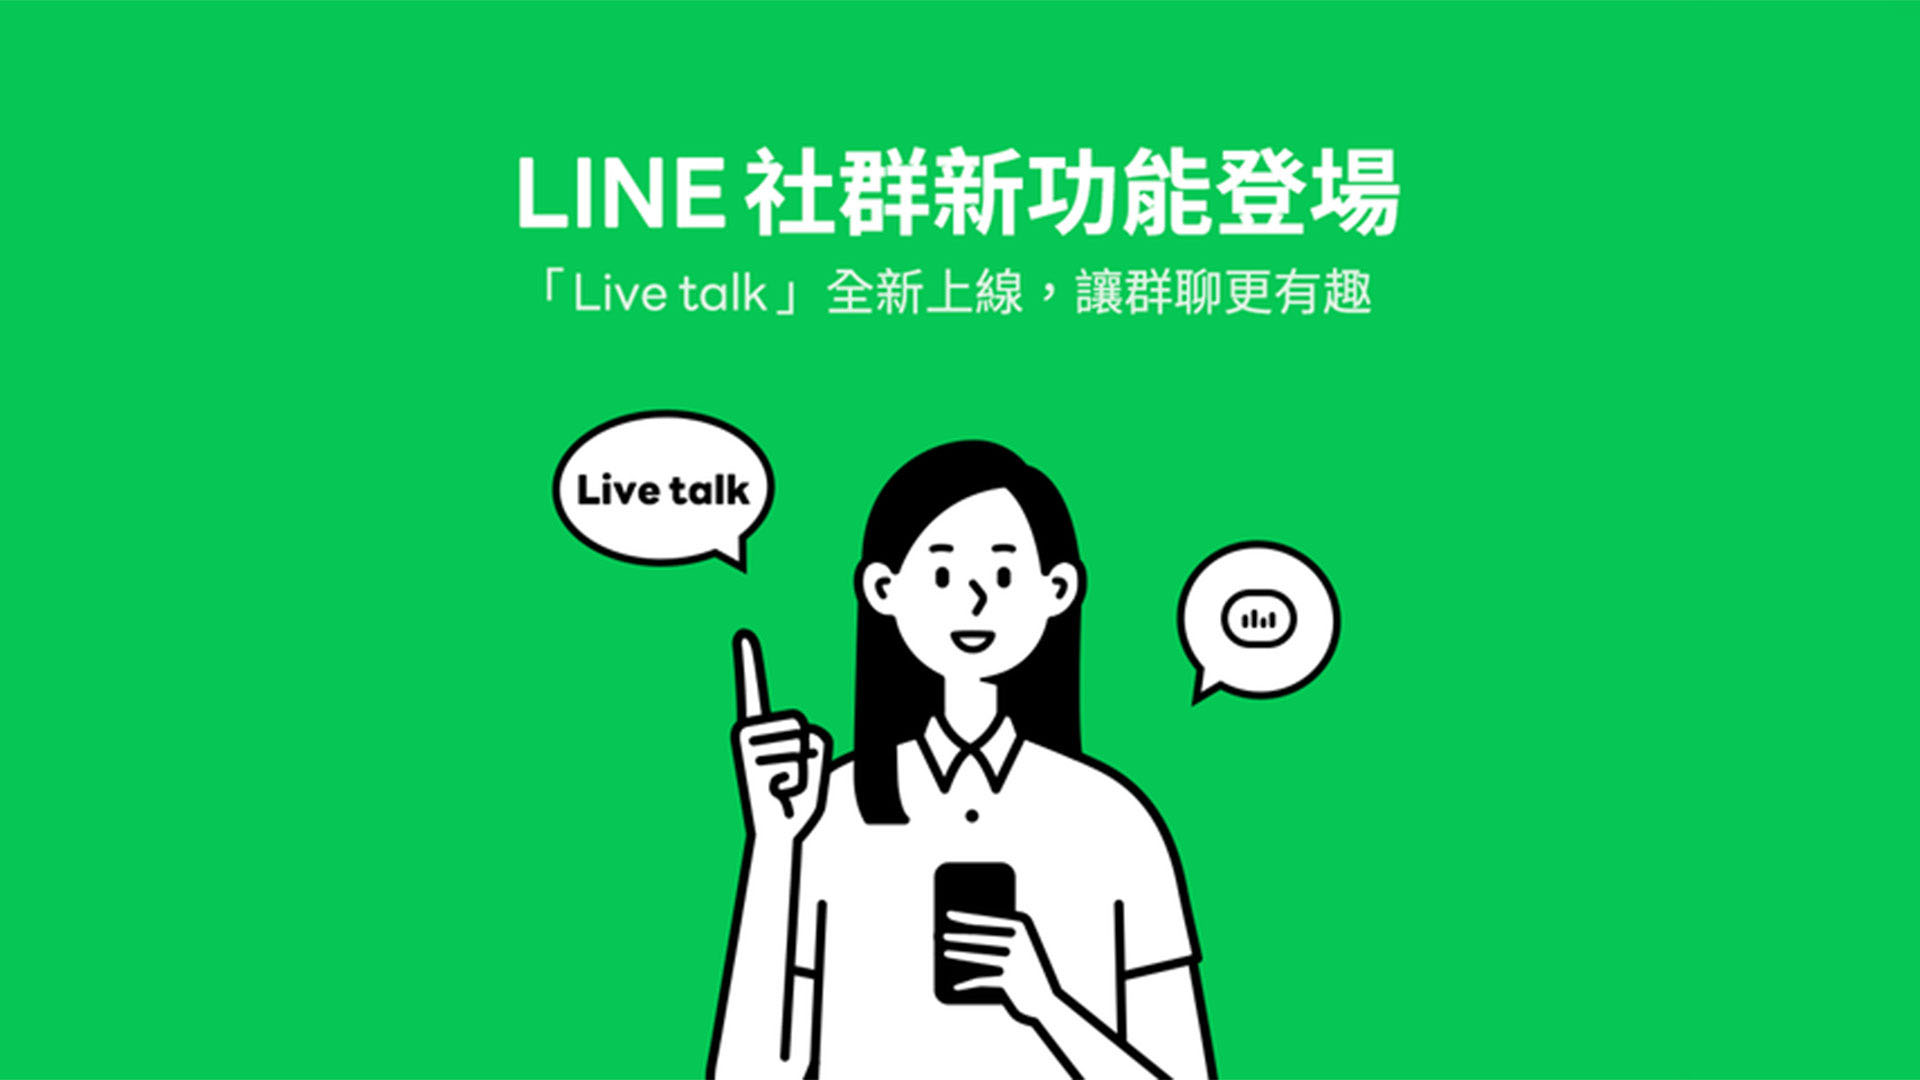 Line Live Talk